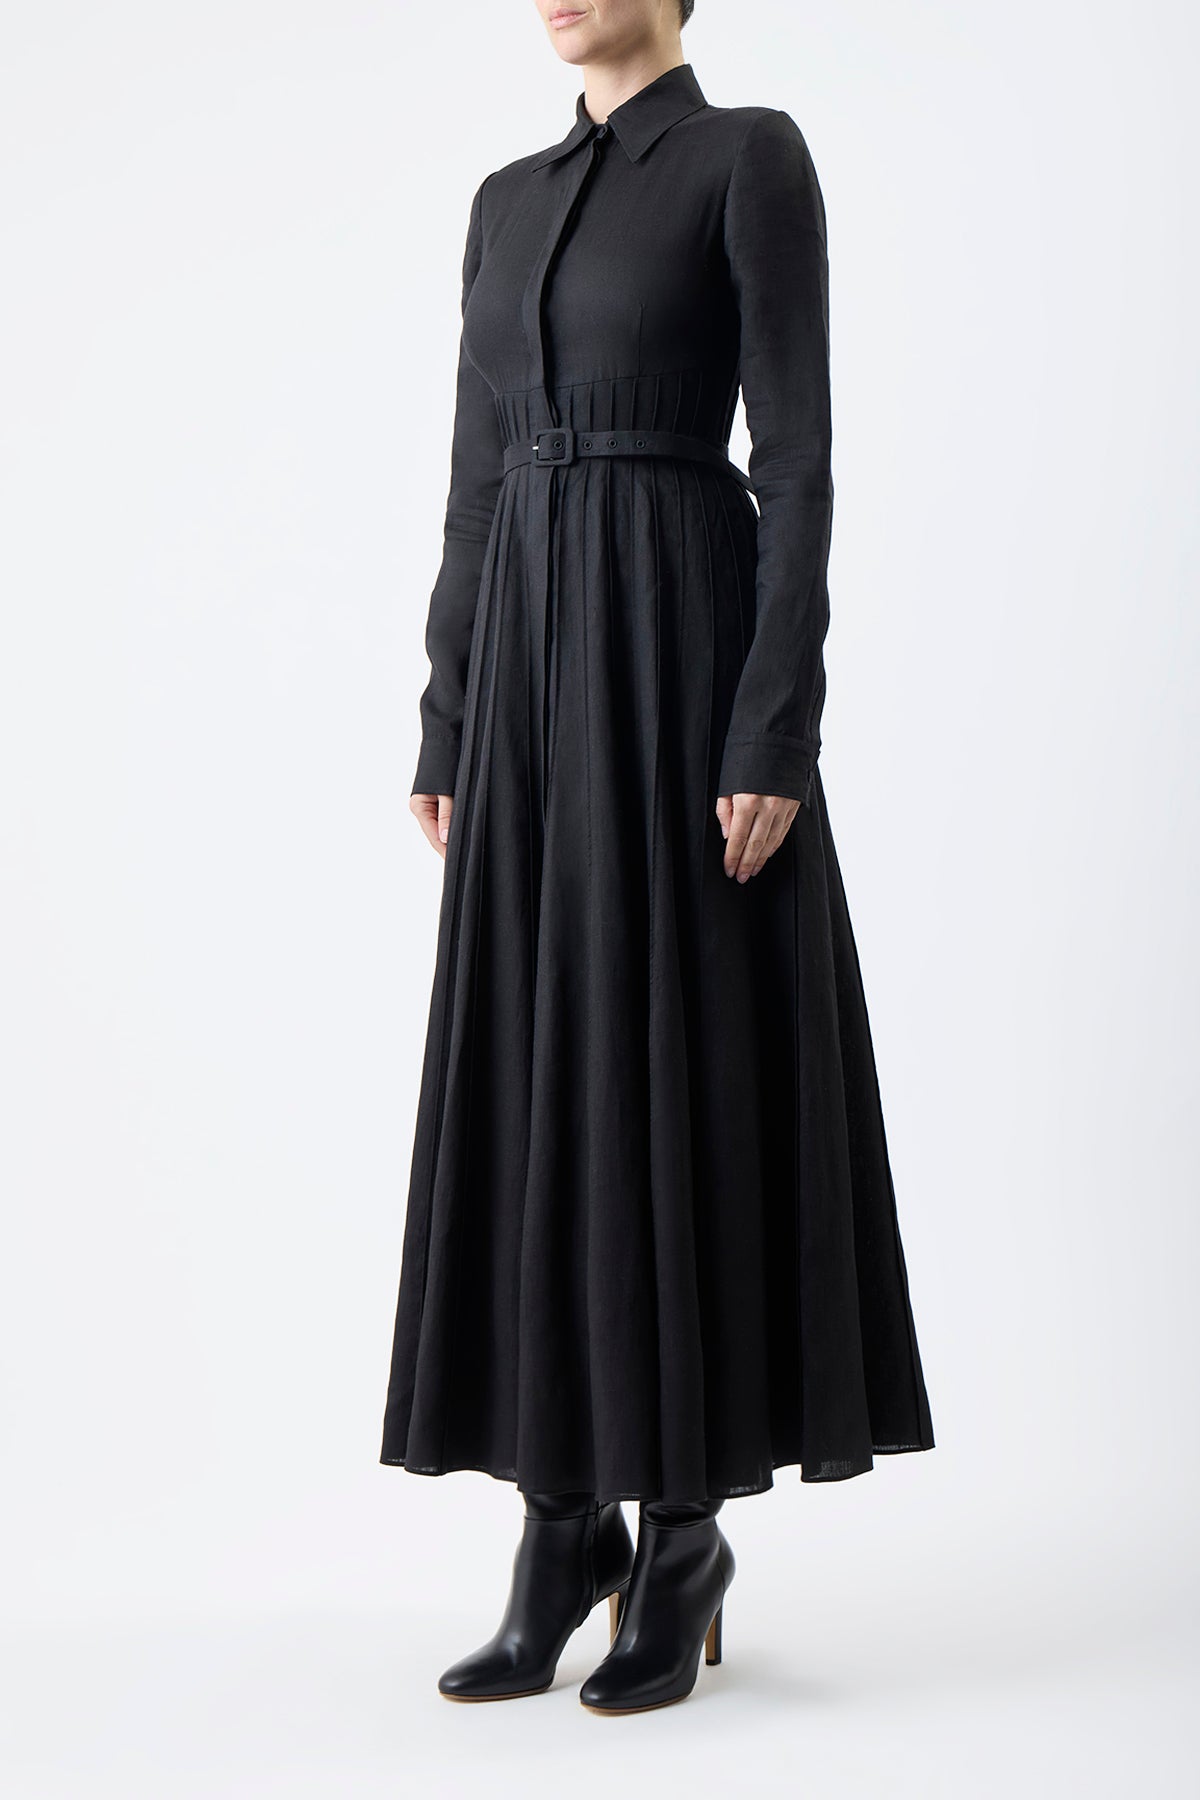 Dewi Pleated Dress in Black Aloe Linen